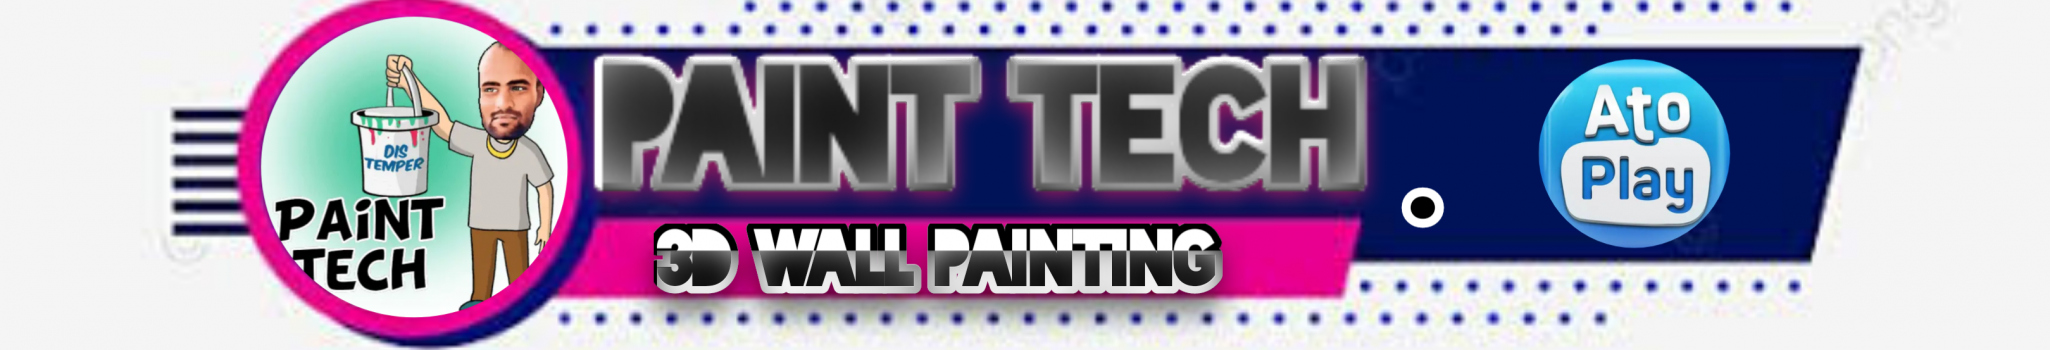 paint tech